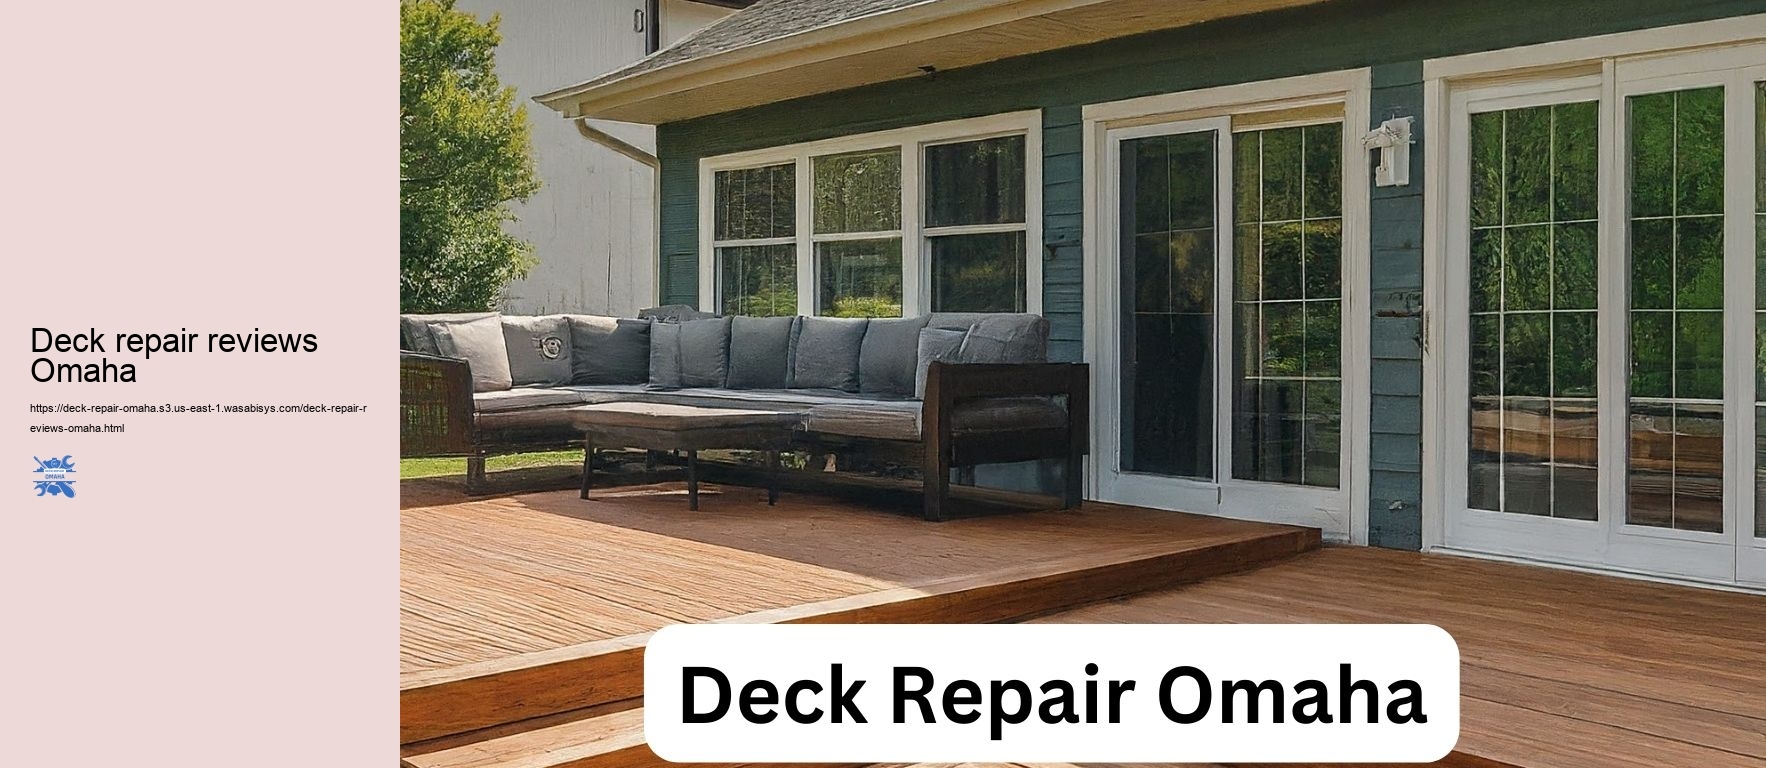 Deck repair reviews Omaha